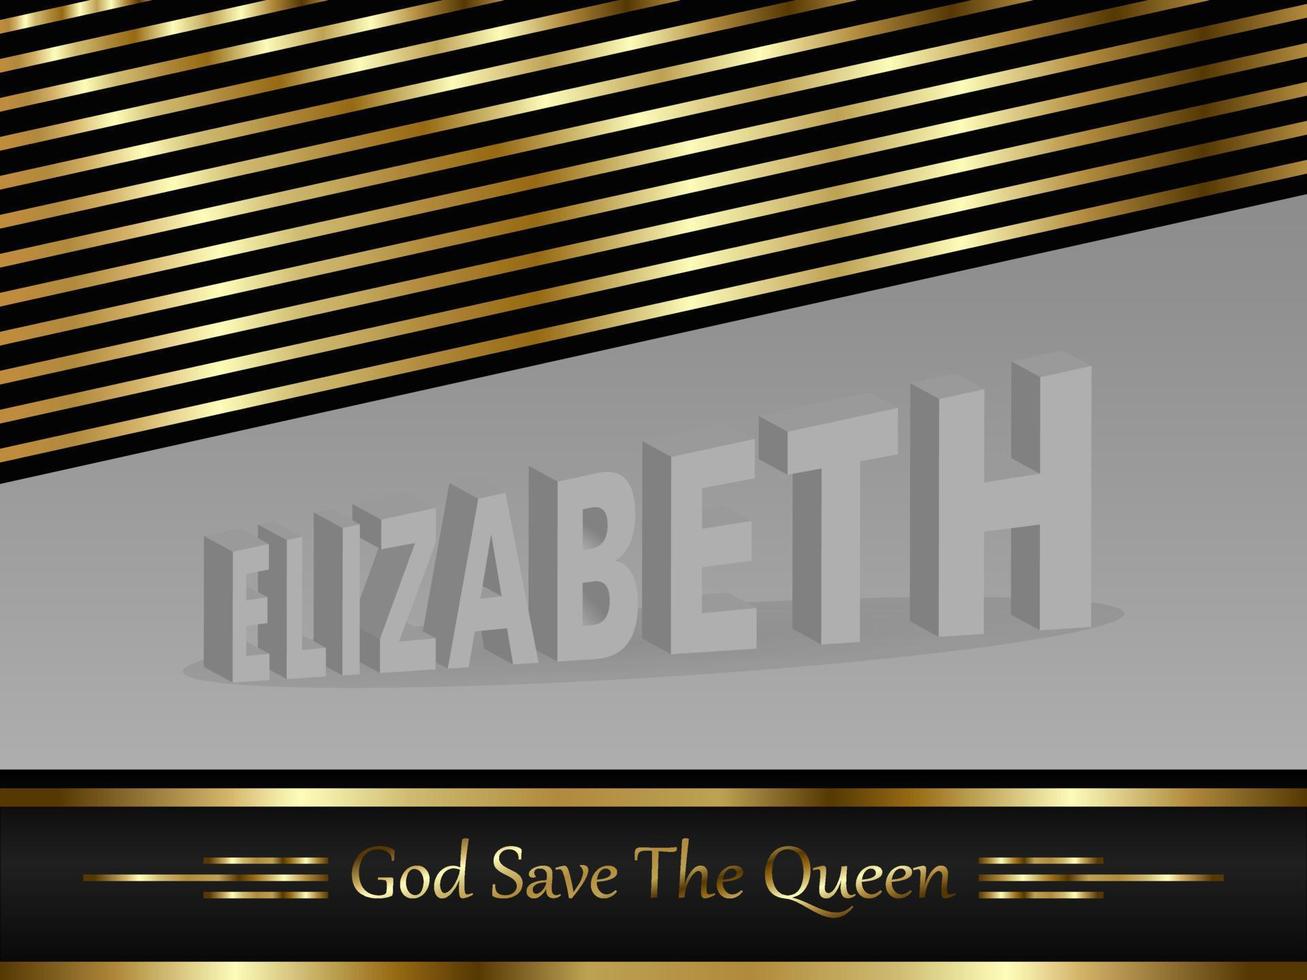 la reina elizabeth ii, diseño dios salve a la reina para pancartas, desolladores, redes sociales, calcomanías, tarjetas de felicitación, etc. vector